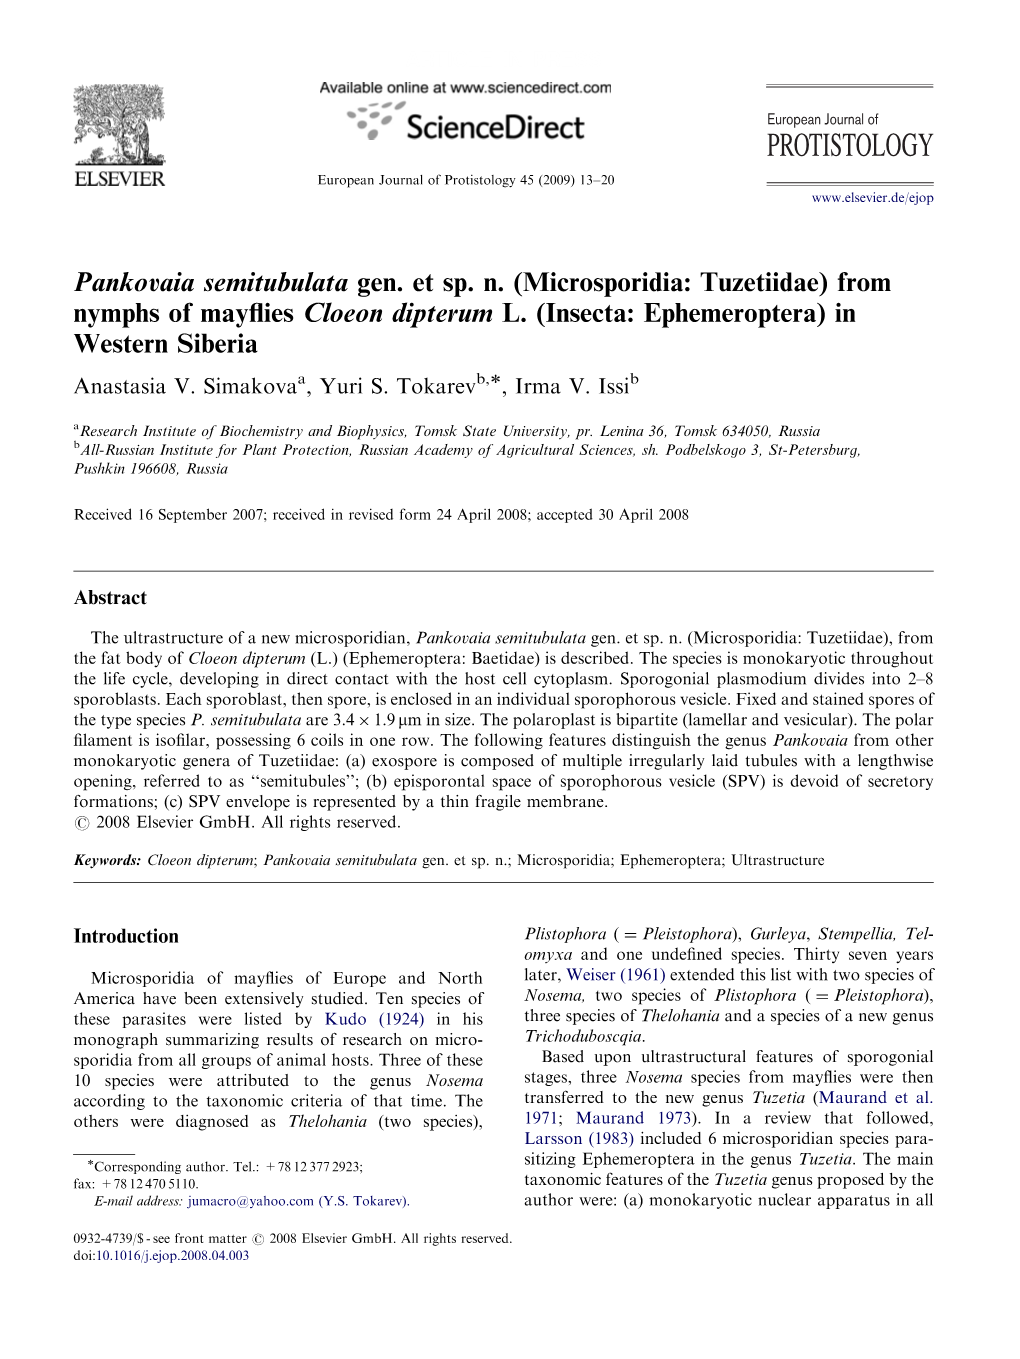 PROTISTOLOGY European Journal of Protistology 45 (2009) 13–20